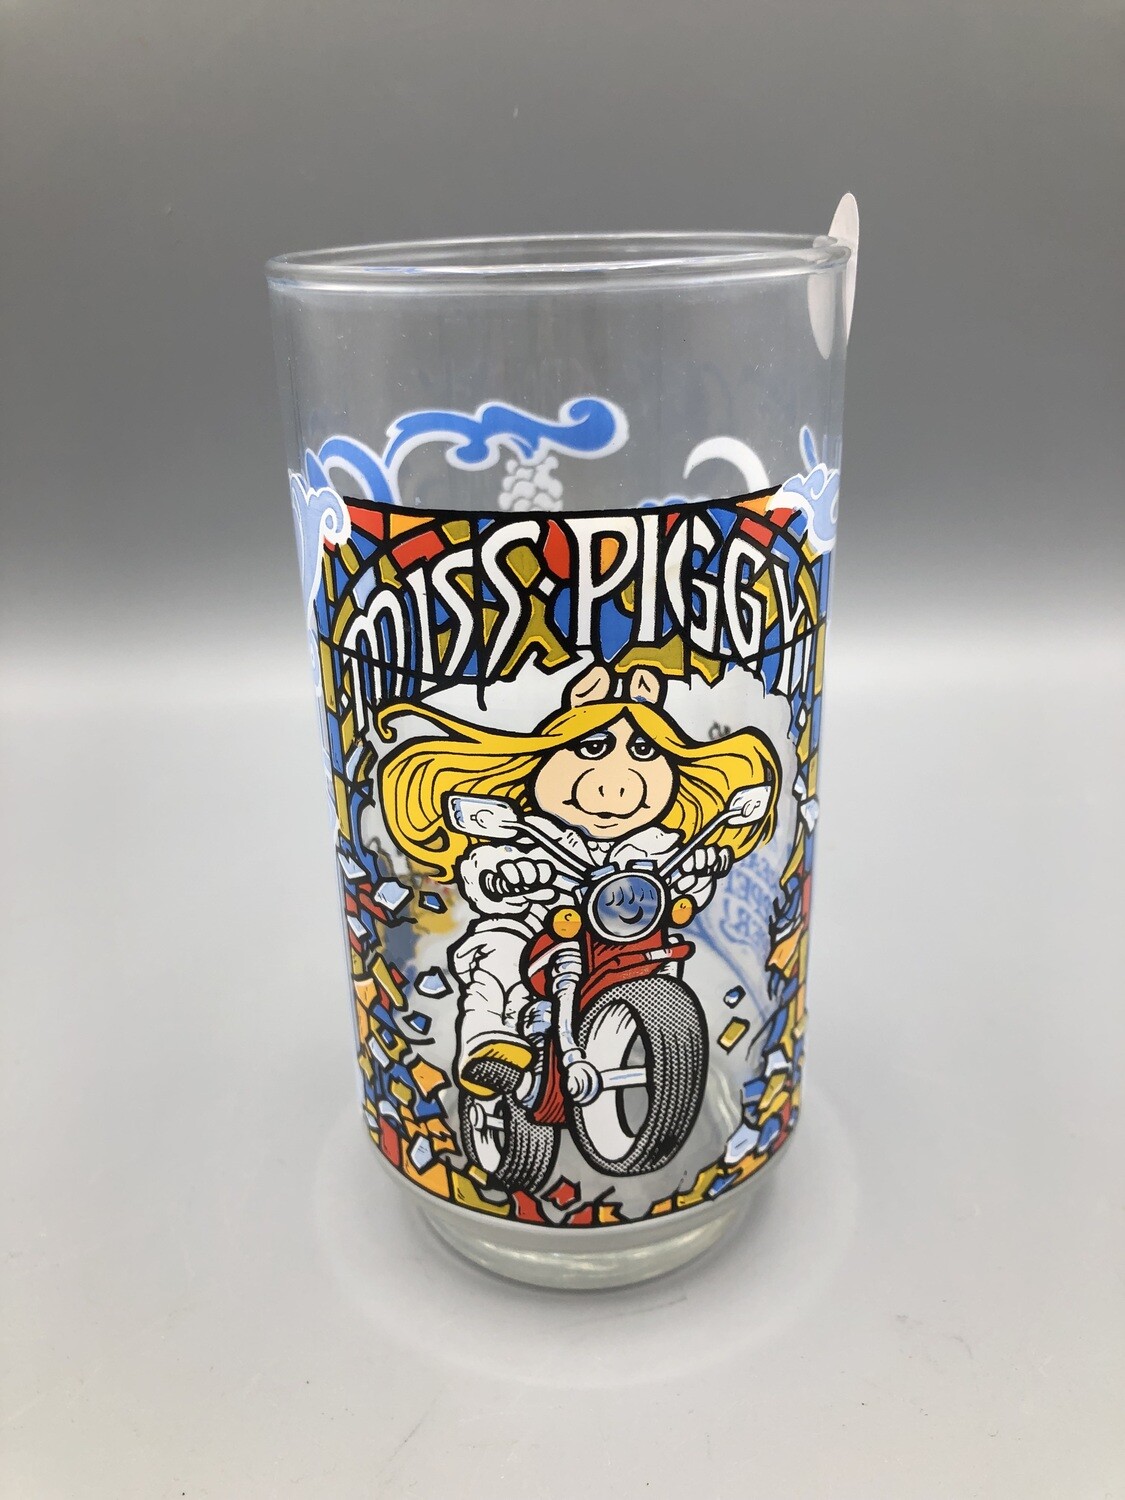 Muppets Miss Piggy Glass